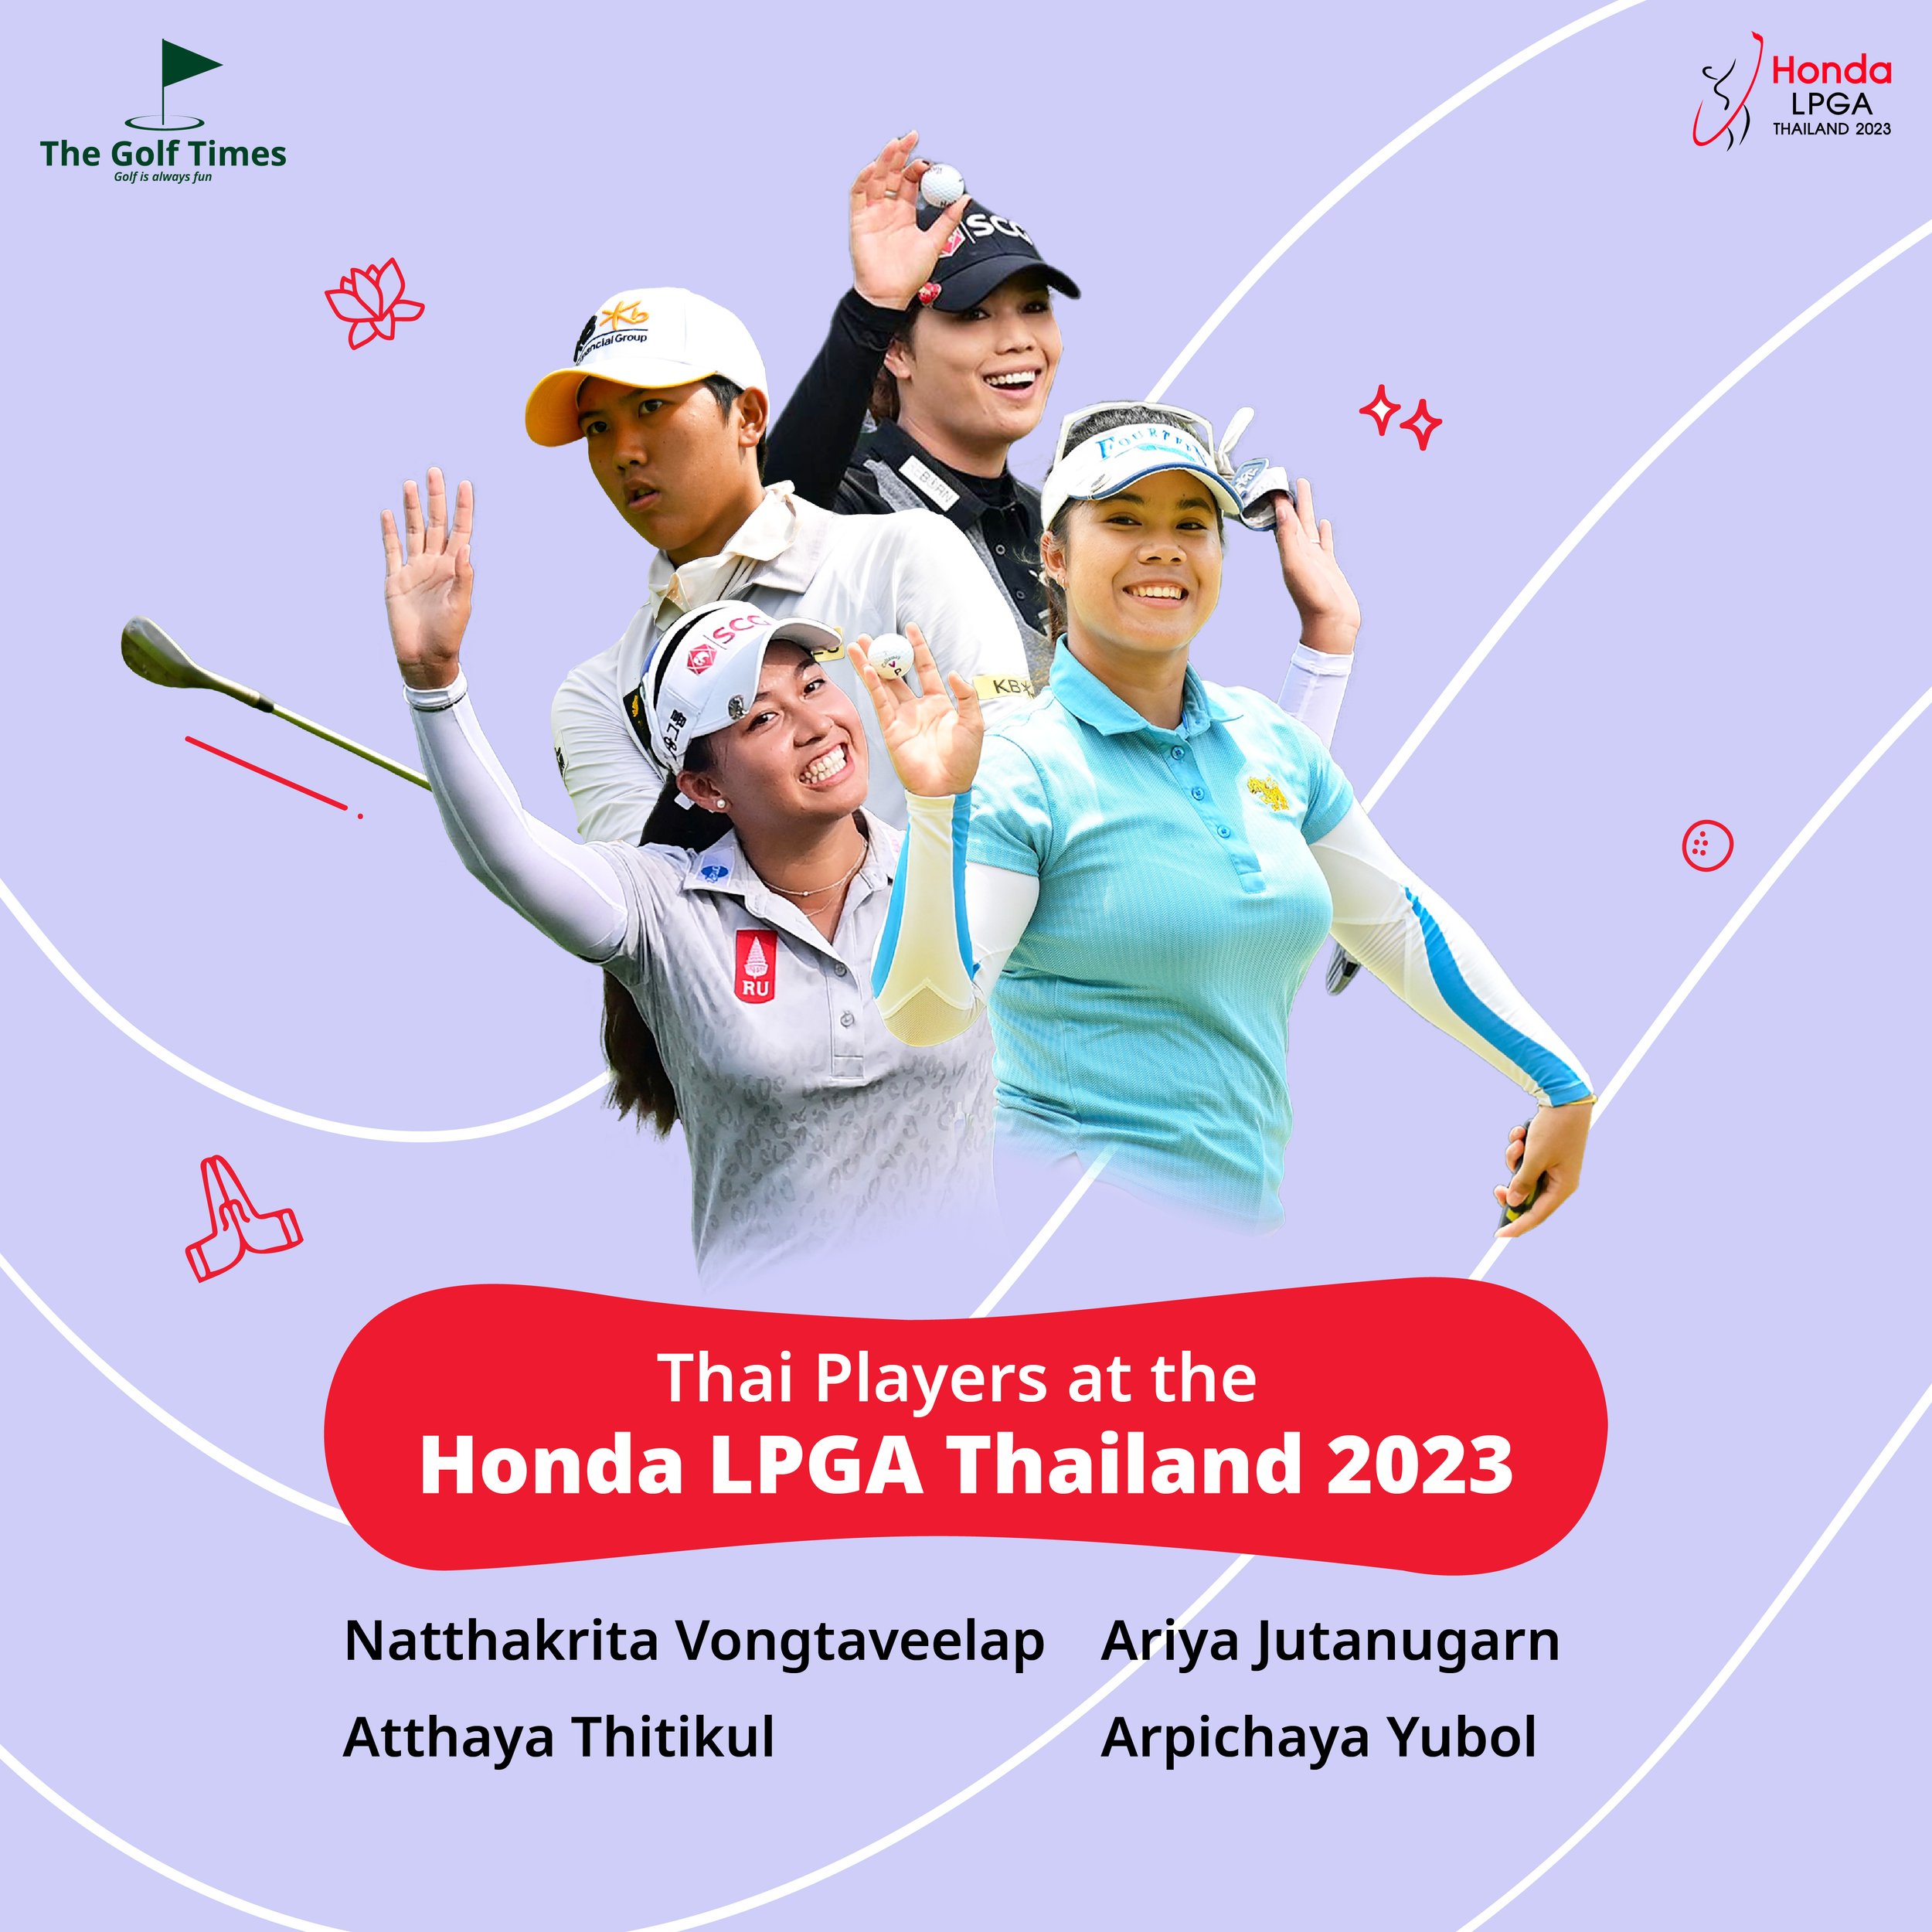 Thai Players at the Honda LPGA Thailand 2023 ร่วมส่งกำลังใจเชียร์โปรไทย